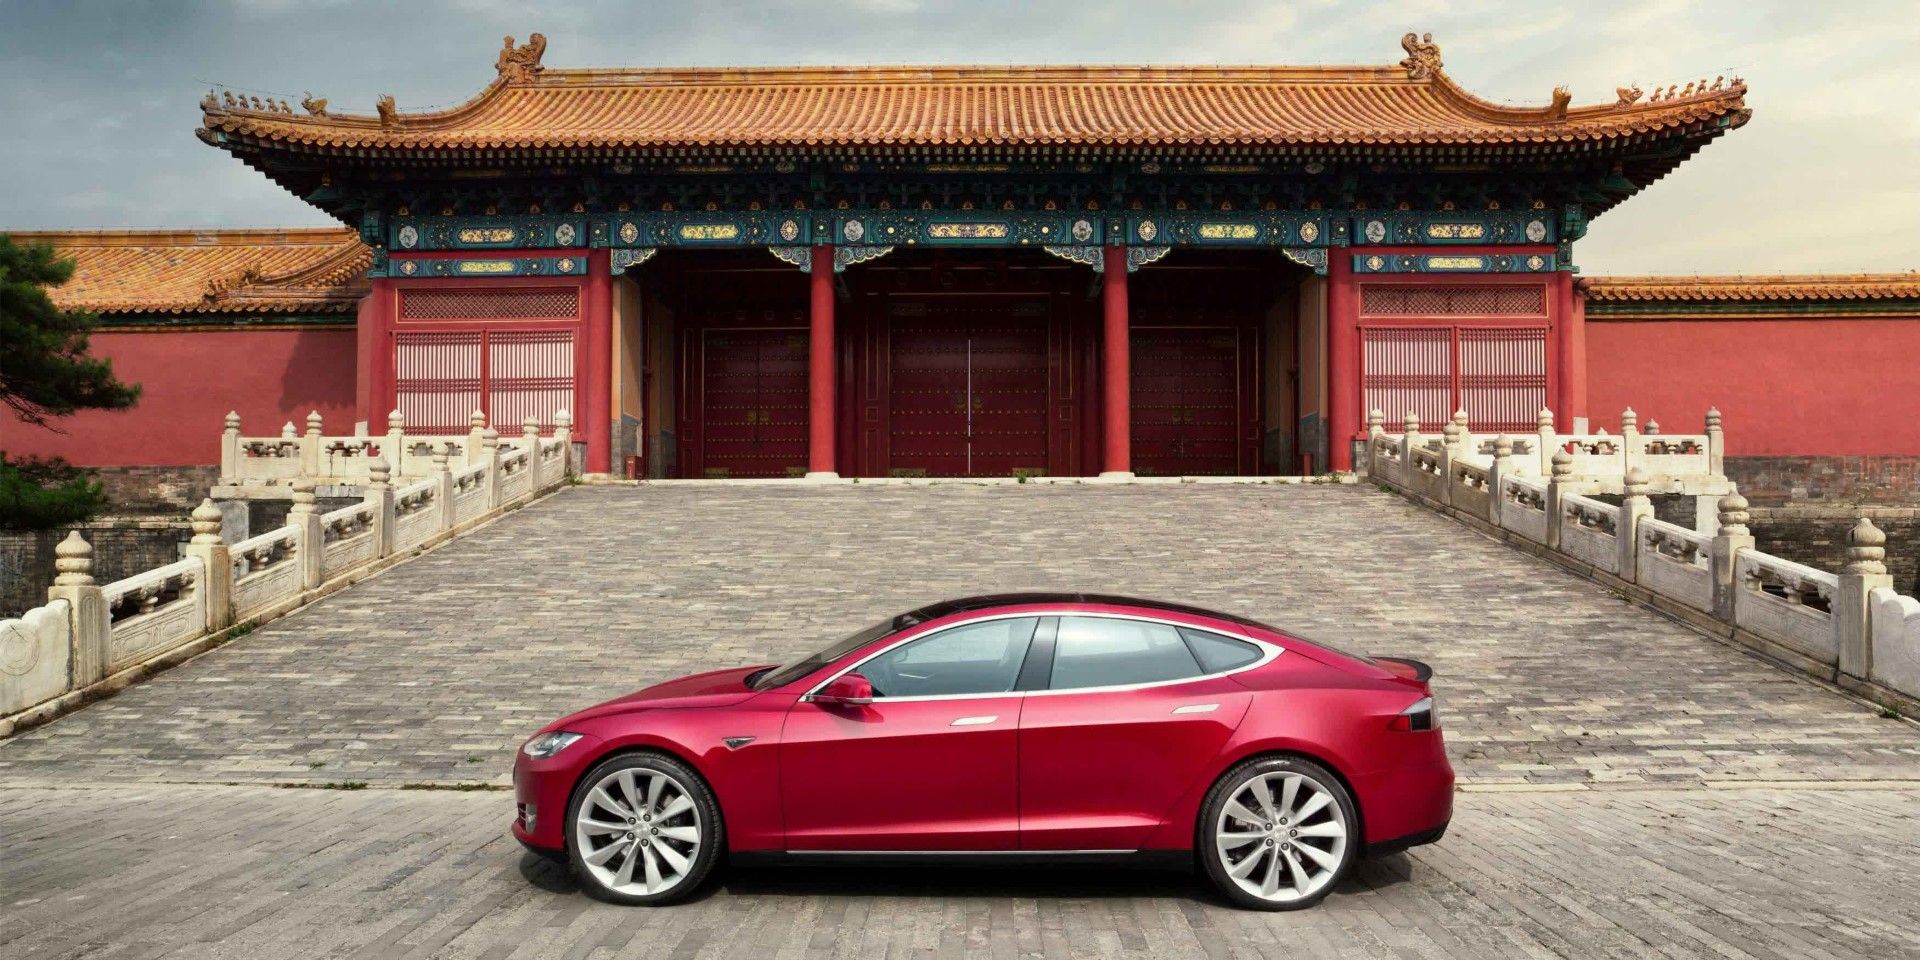 Κίνα: Απαγορεύονται τα αυτοκίνητα της Tesla λόγω...κατασκοπείας!